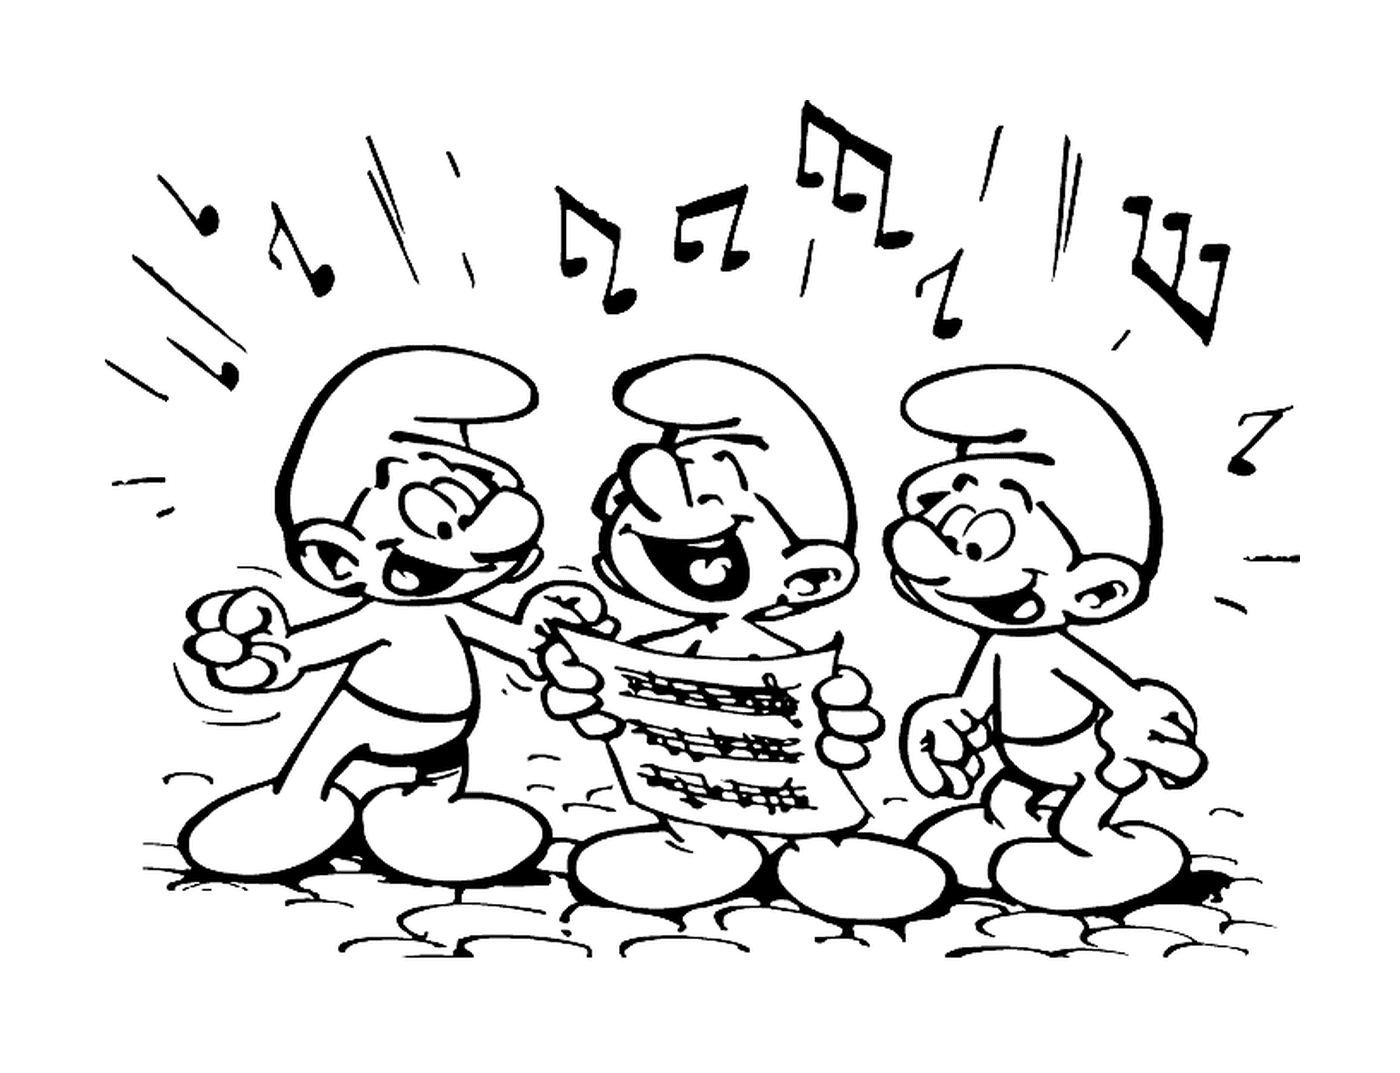  Três smurfs cantam harmoniosamente 